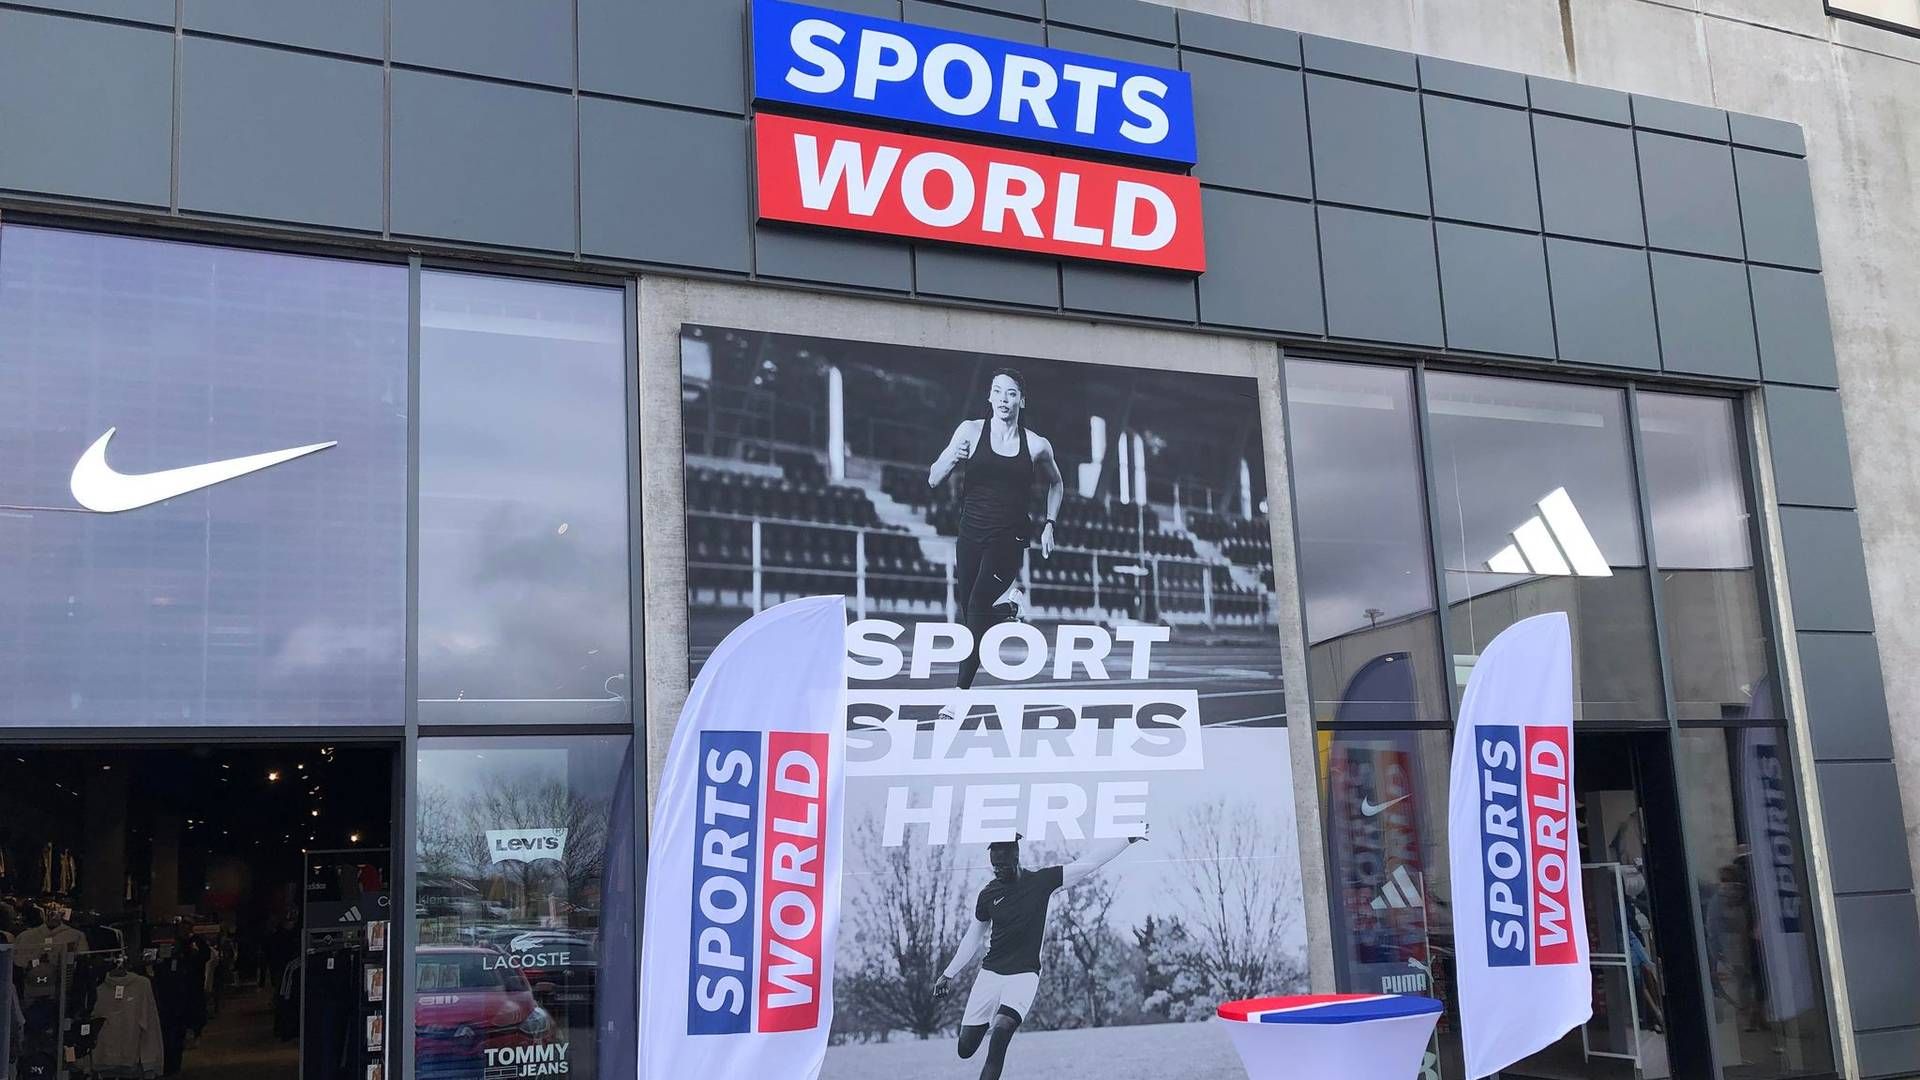 Den verserende retssag har bl.a. betydet, at Sportmaster-ejeren Frasers Group valgte at kalde den danske sportskæde for Sports World og ikke Sports Direct, som kæden ellers hedder i store dele af verden. | Foto: Alexander Thorup/DetailWatch